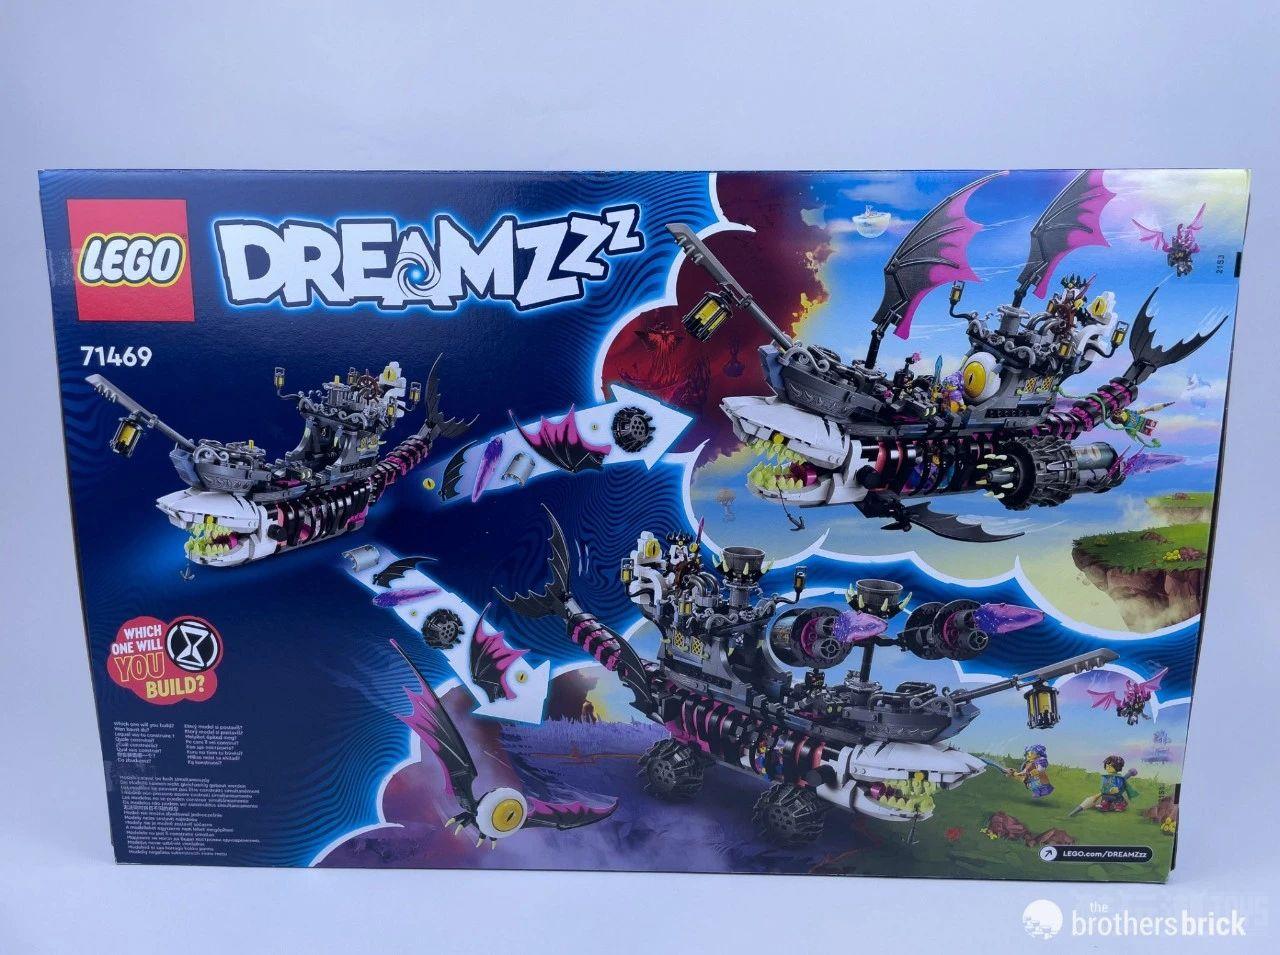 超帅的鲨鱼船—乐高Dreamzzz系列71469梦魇鲨鱼船开箱评测 -1